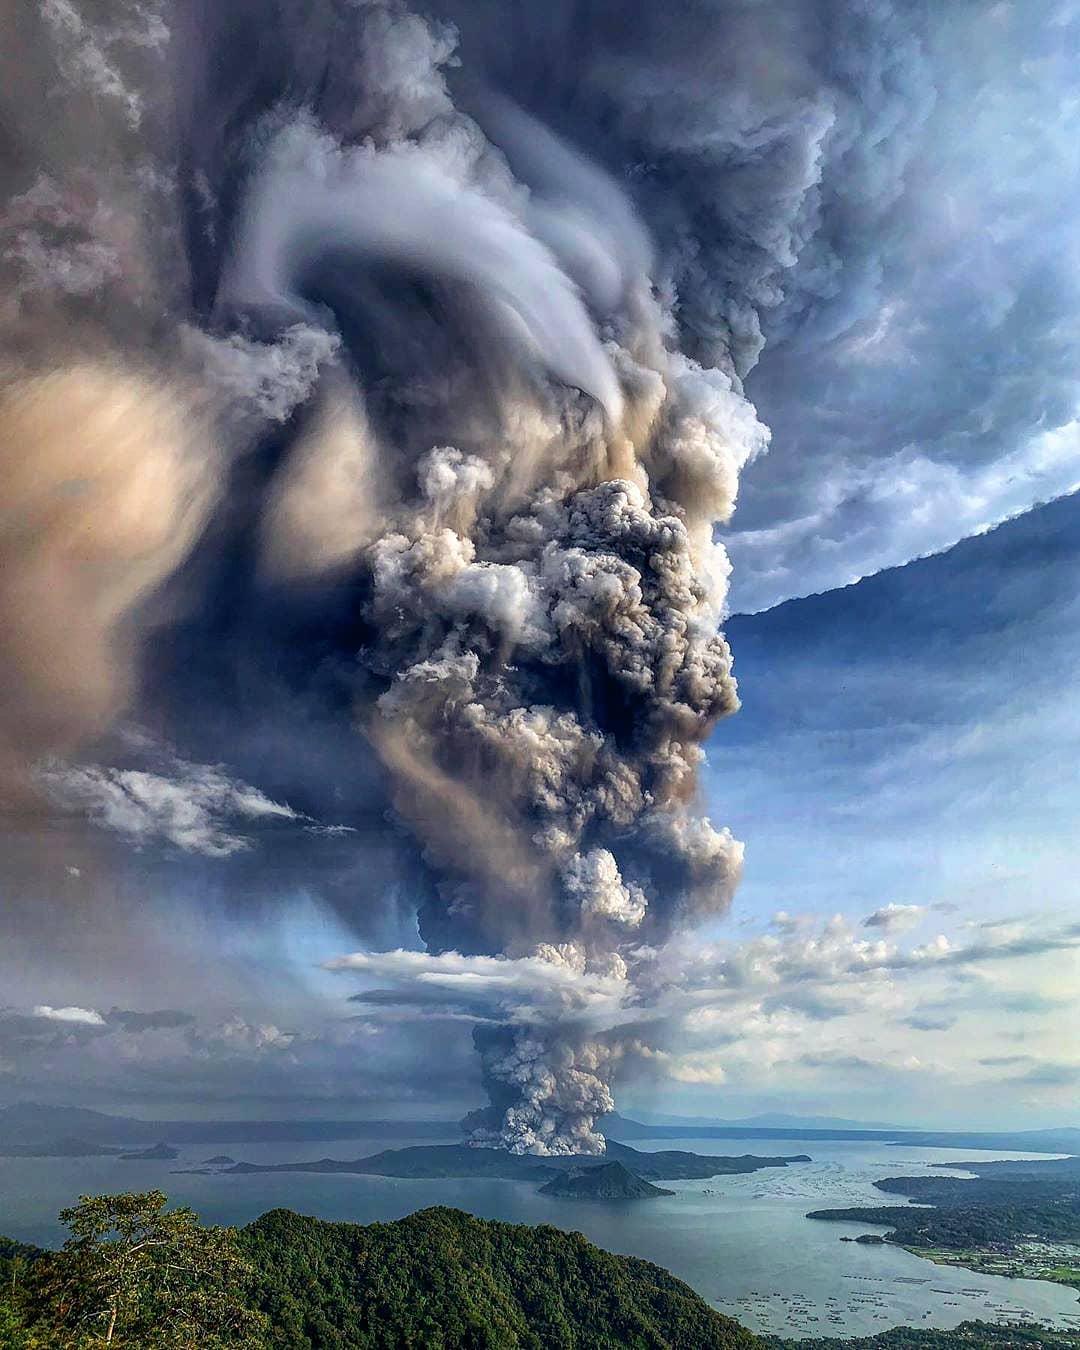 菲律宾皮纳图博火山图片